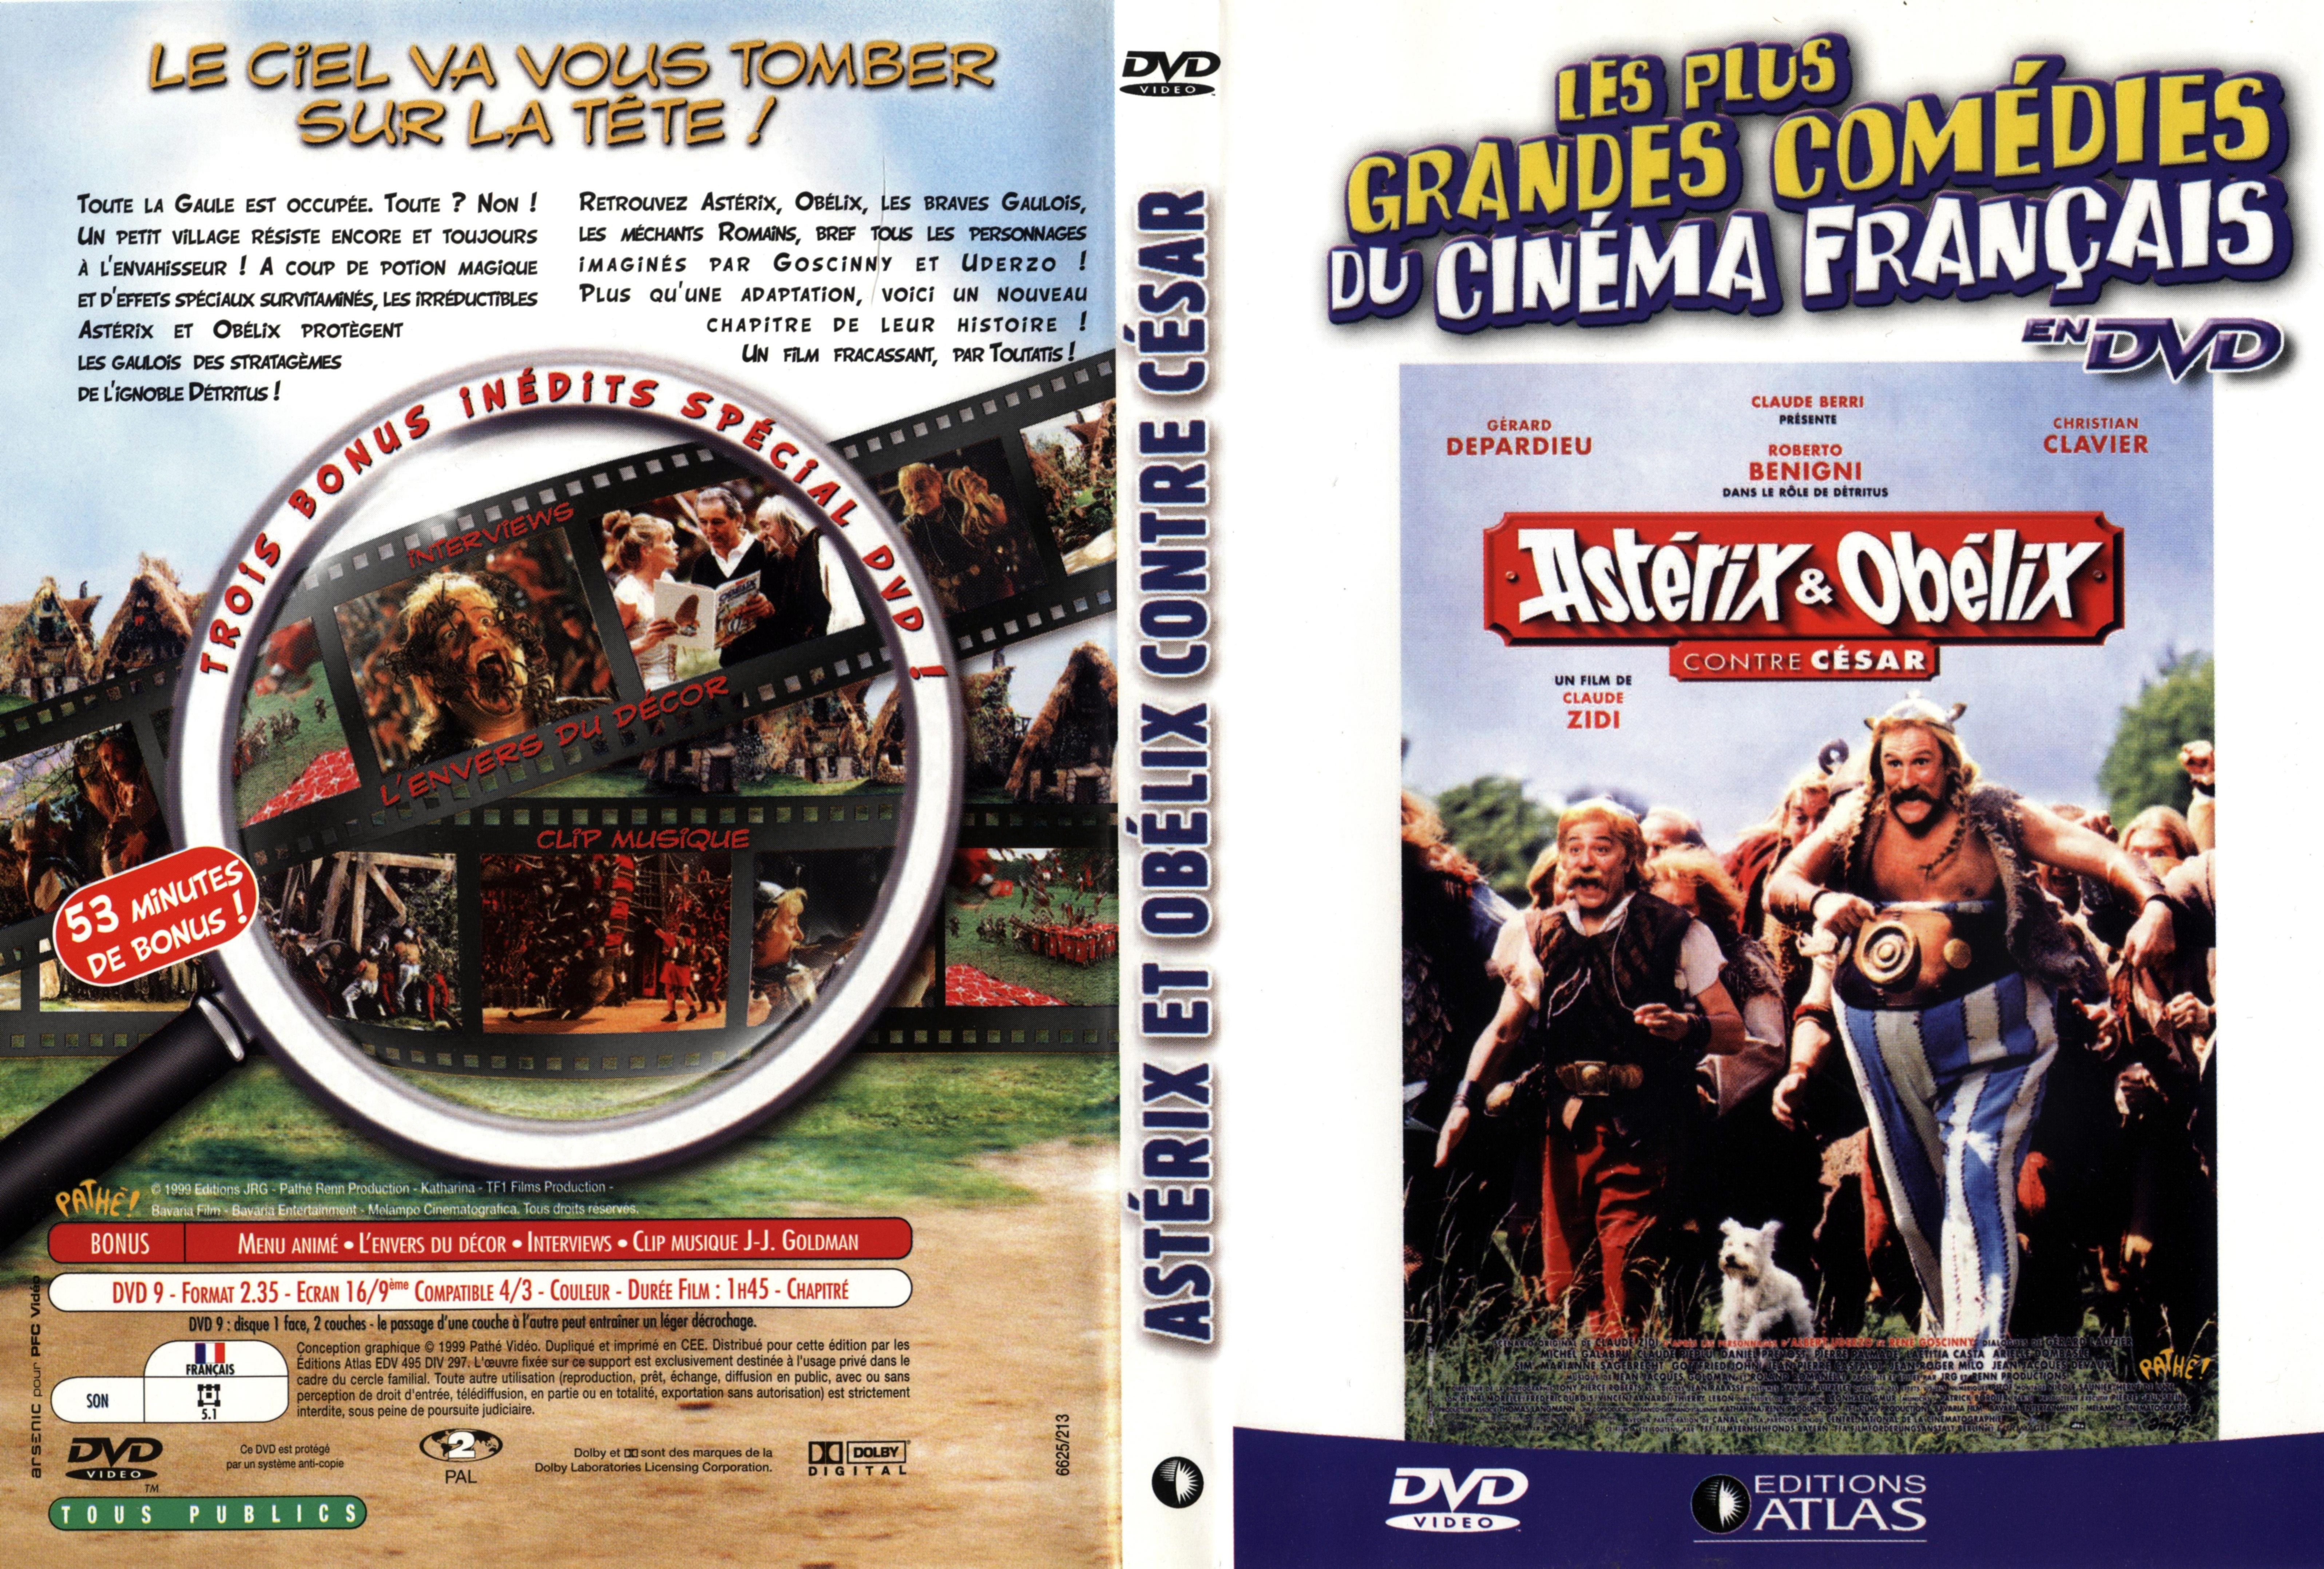 Jaquette DVD Asterix et Obelix contre Csar v2